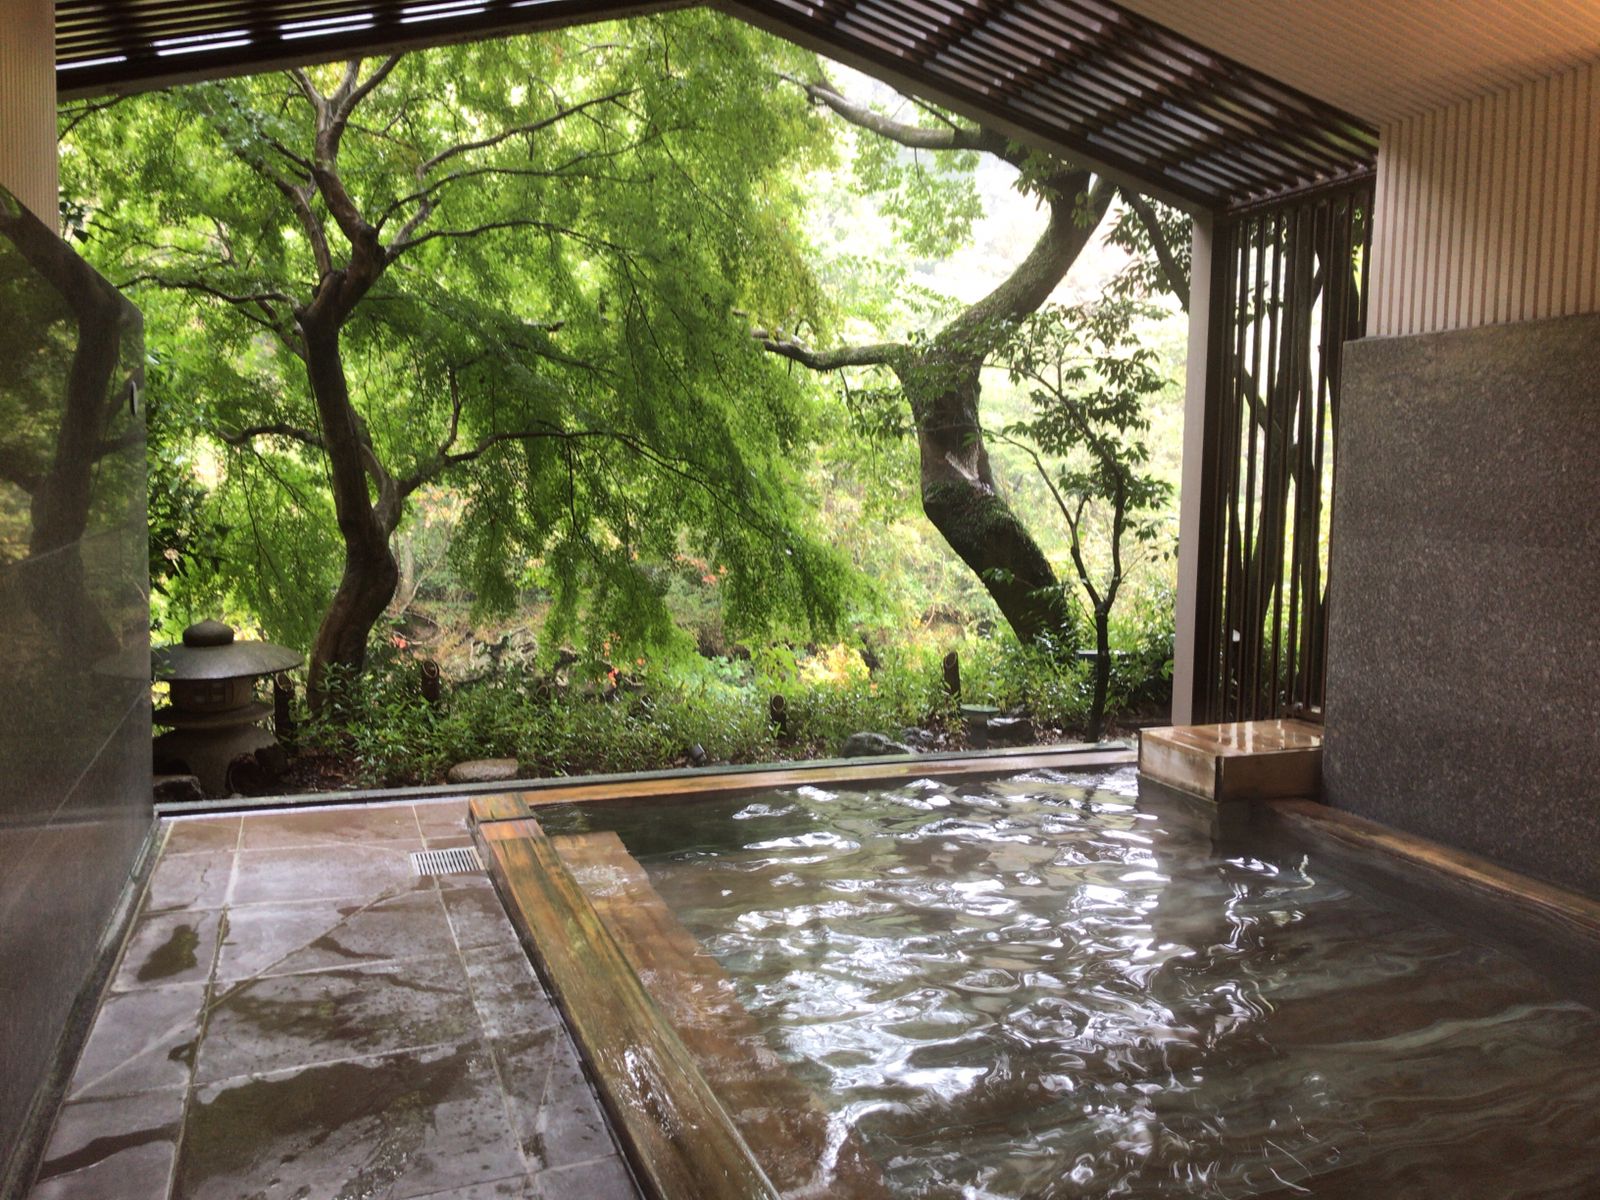 プライベート時間を楽しめる 露天風呂付客室がある東北の宿10選 Imatabi イマタビ